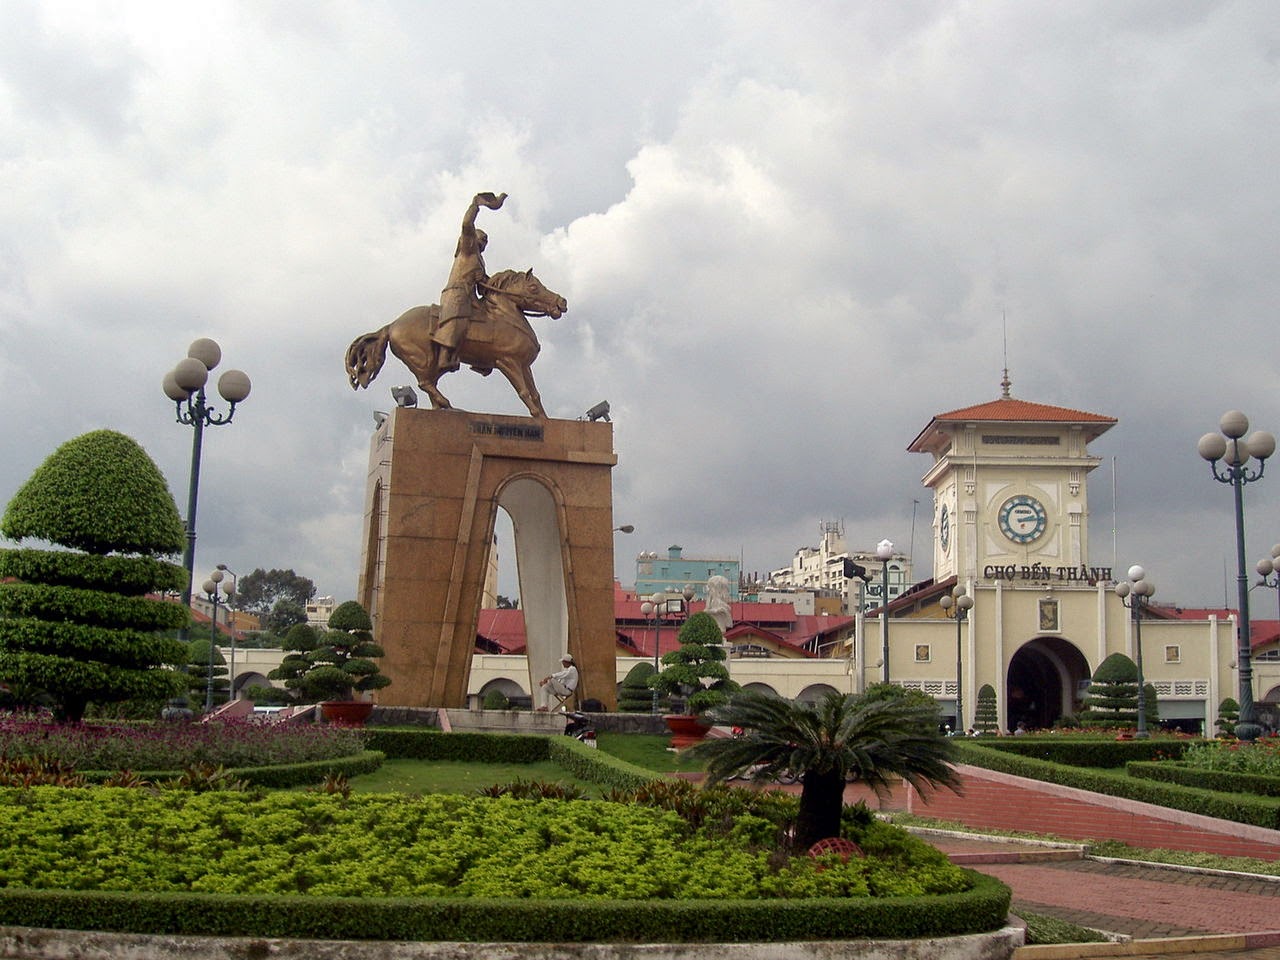 Tượng Trần Nguyên Hãn đặt ở trước cổng chợ Bến Thành, được chuyển về công viên Phú Lâm vào năm 2014 để phục vụ xây metro